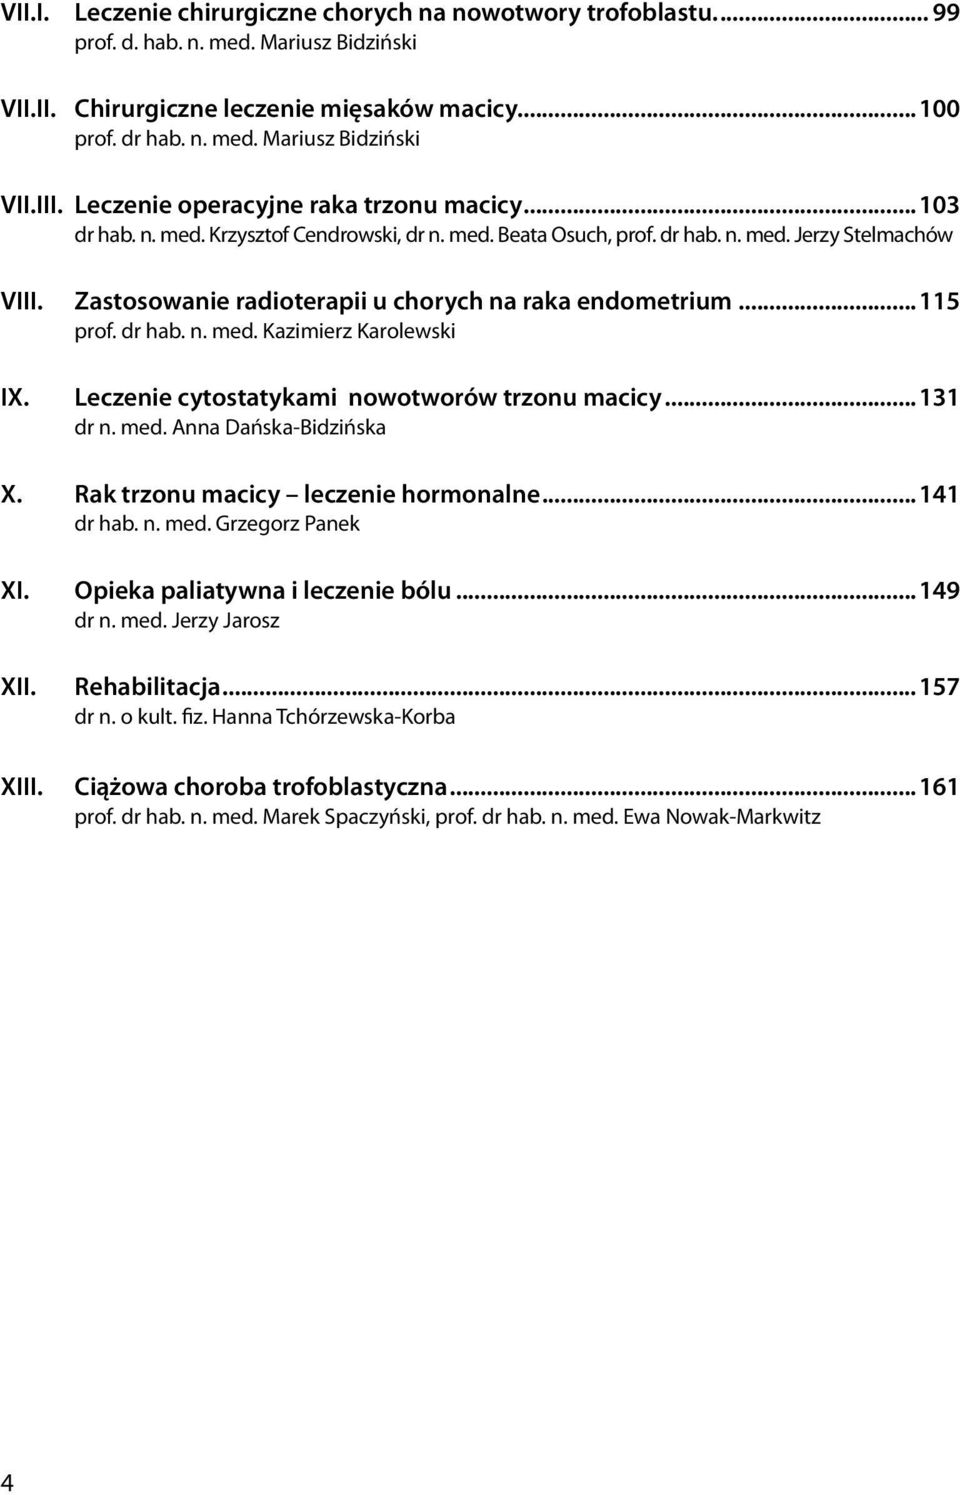 Zastosowanie radioterapii u chorych na raka endometrium...115 prof. dr hab. n. med. Kazimierz Karolewski Leczenie cytostatykami nowotworów trzonu macicy...131 dr n. med. Anna Dańska-Bidzińska X.